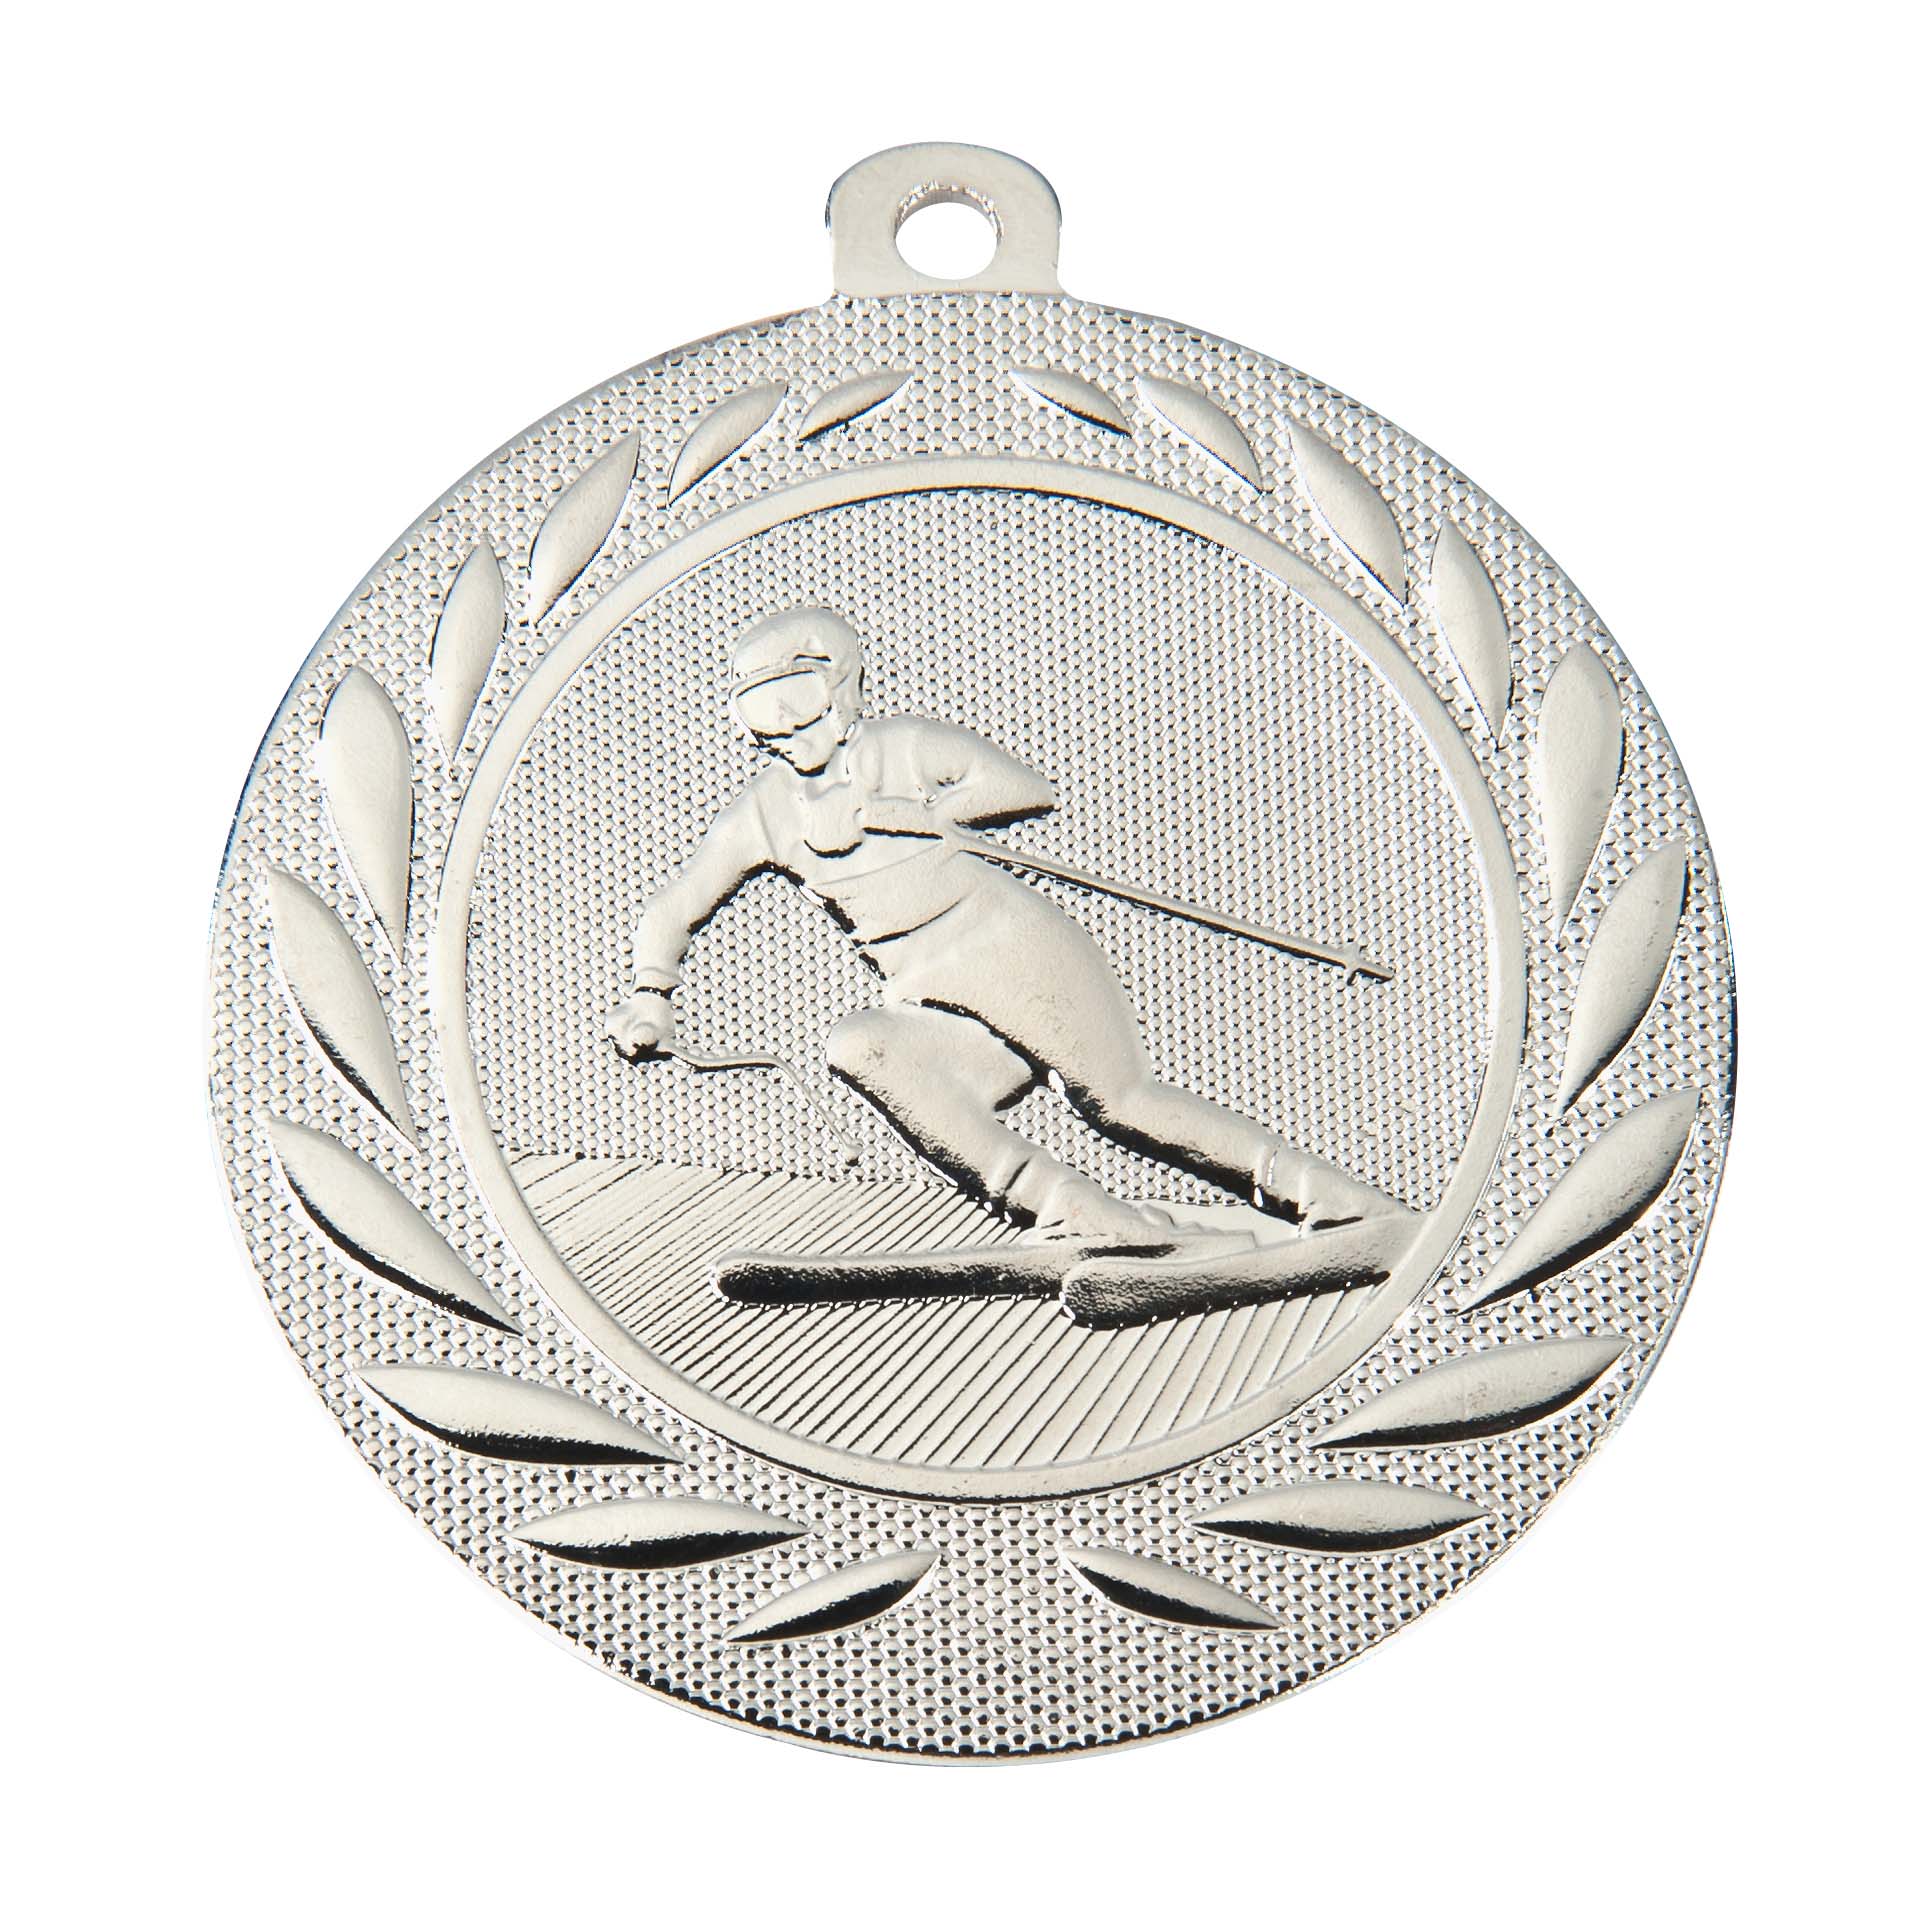 Ski-Medaille DI15000Q inkl. Band und Beschriftung Silber Fertig montiert gegen Aufpreis